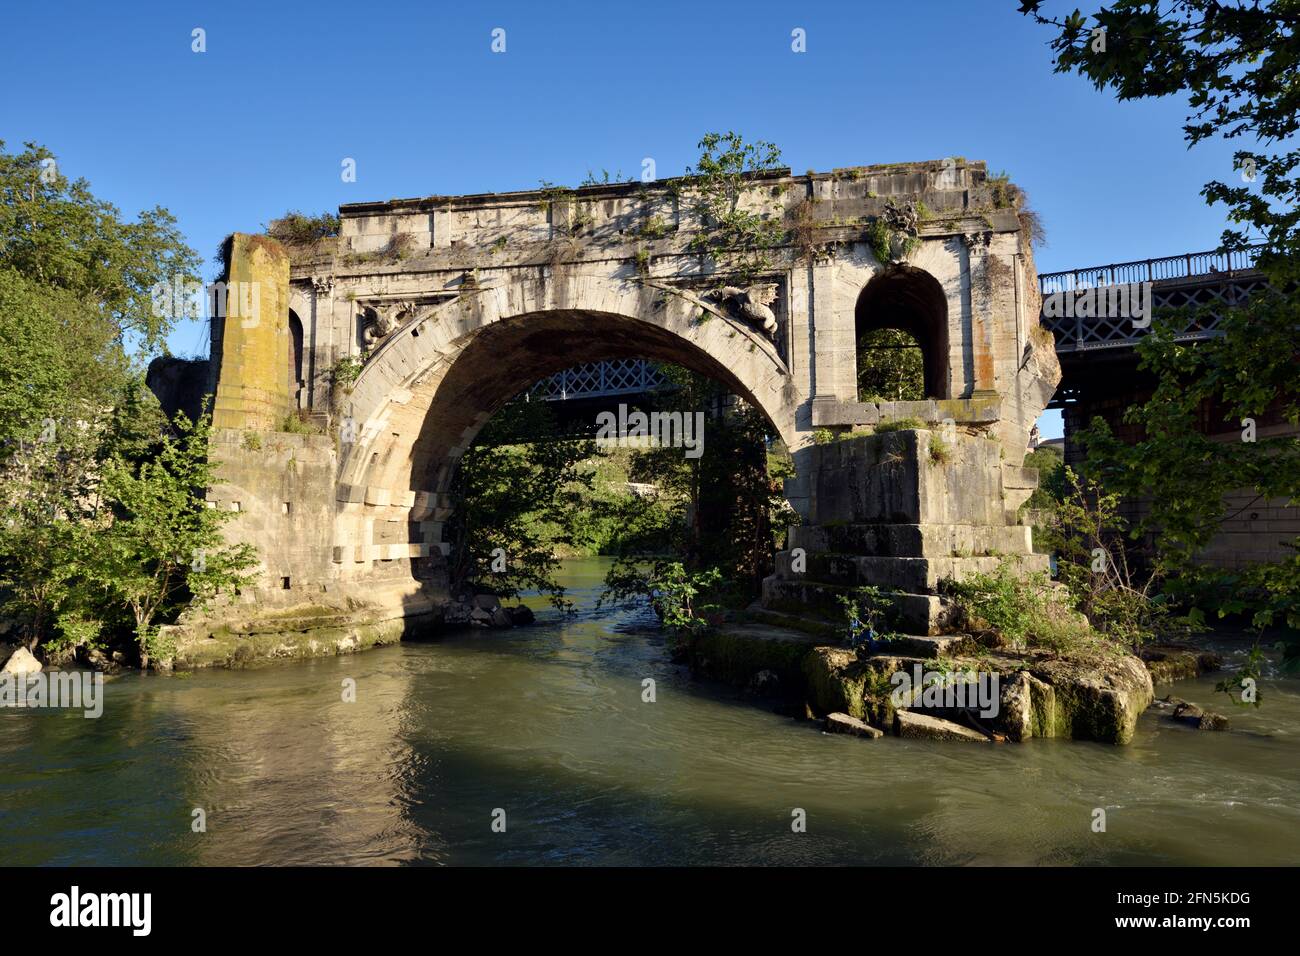 Italie, Rome, Tibre, Ponte Rotto (pont cassé), Pons Aemilius, ancien pont romain Banque D'Images